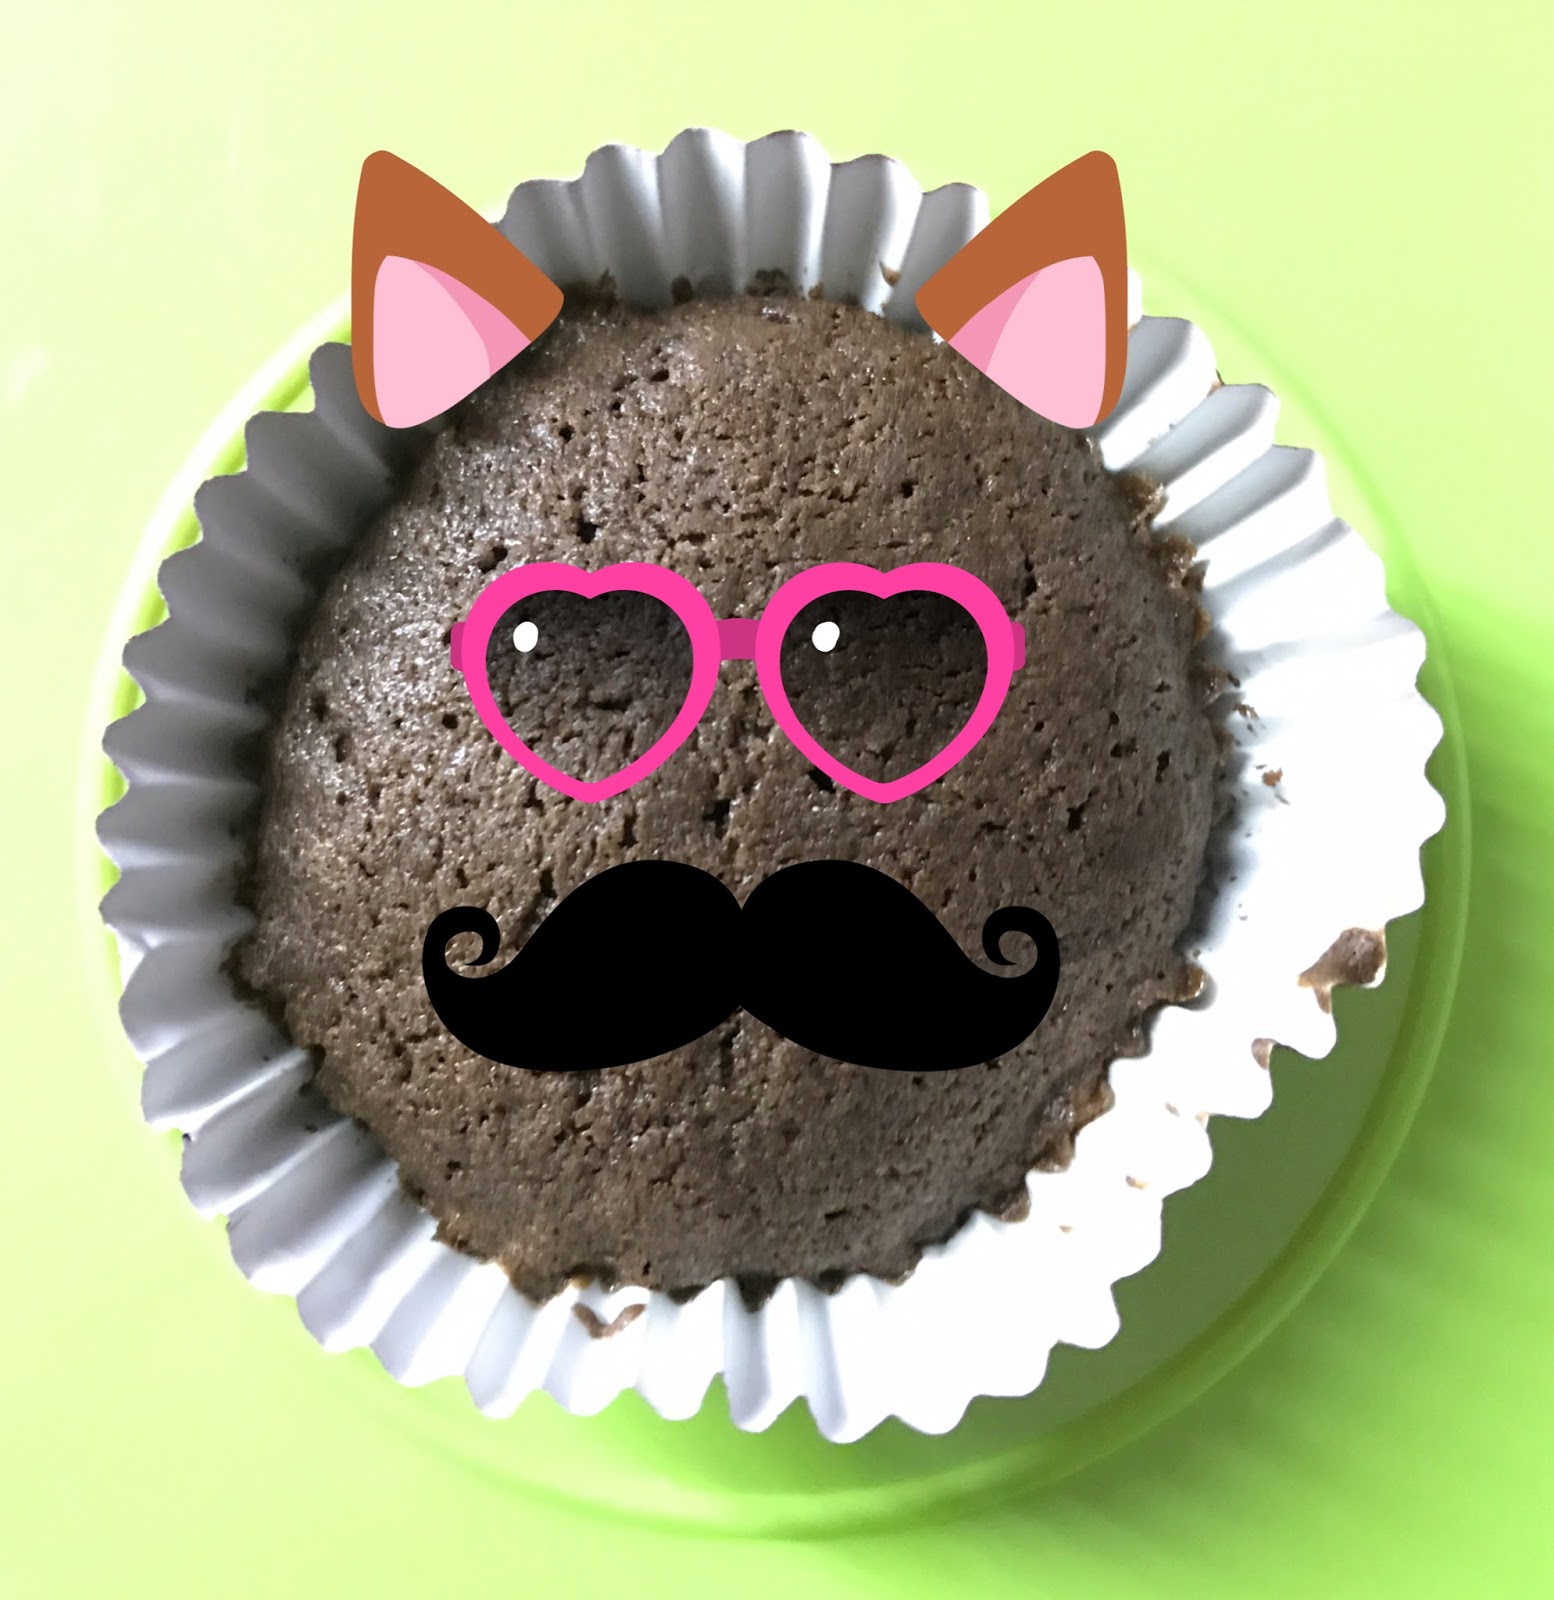 Resepi Cupcake Chocolate mudah dan sedap - Rodiah Amir